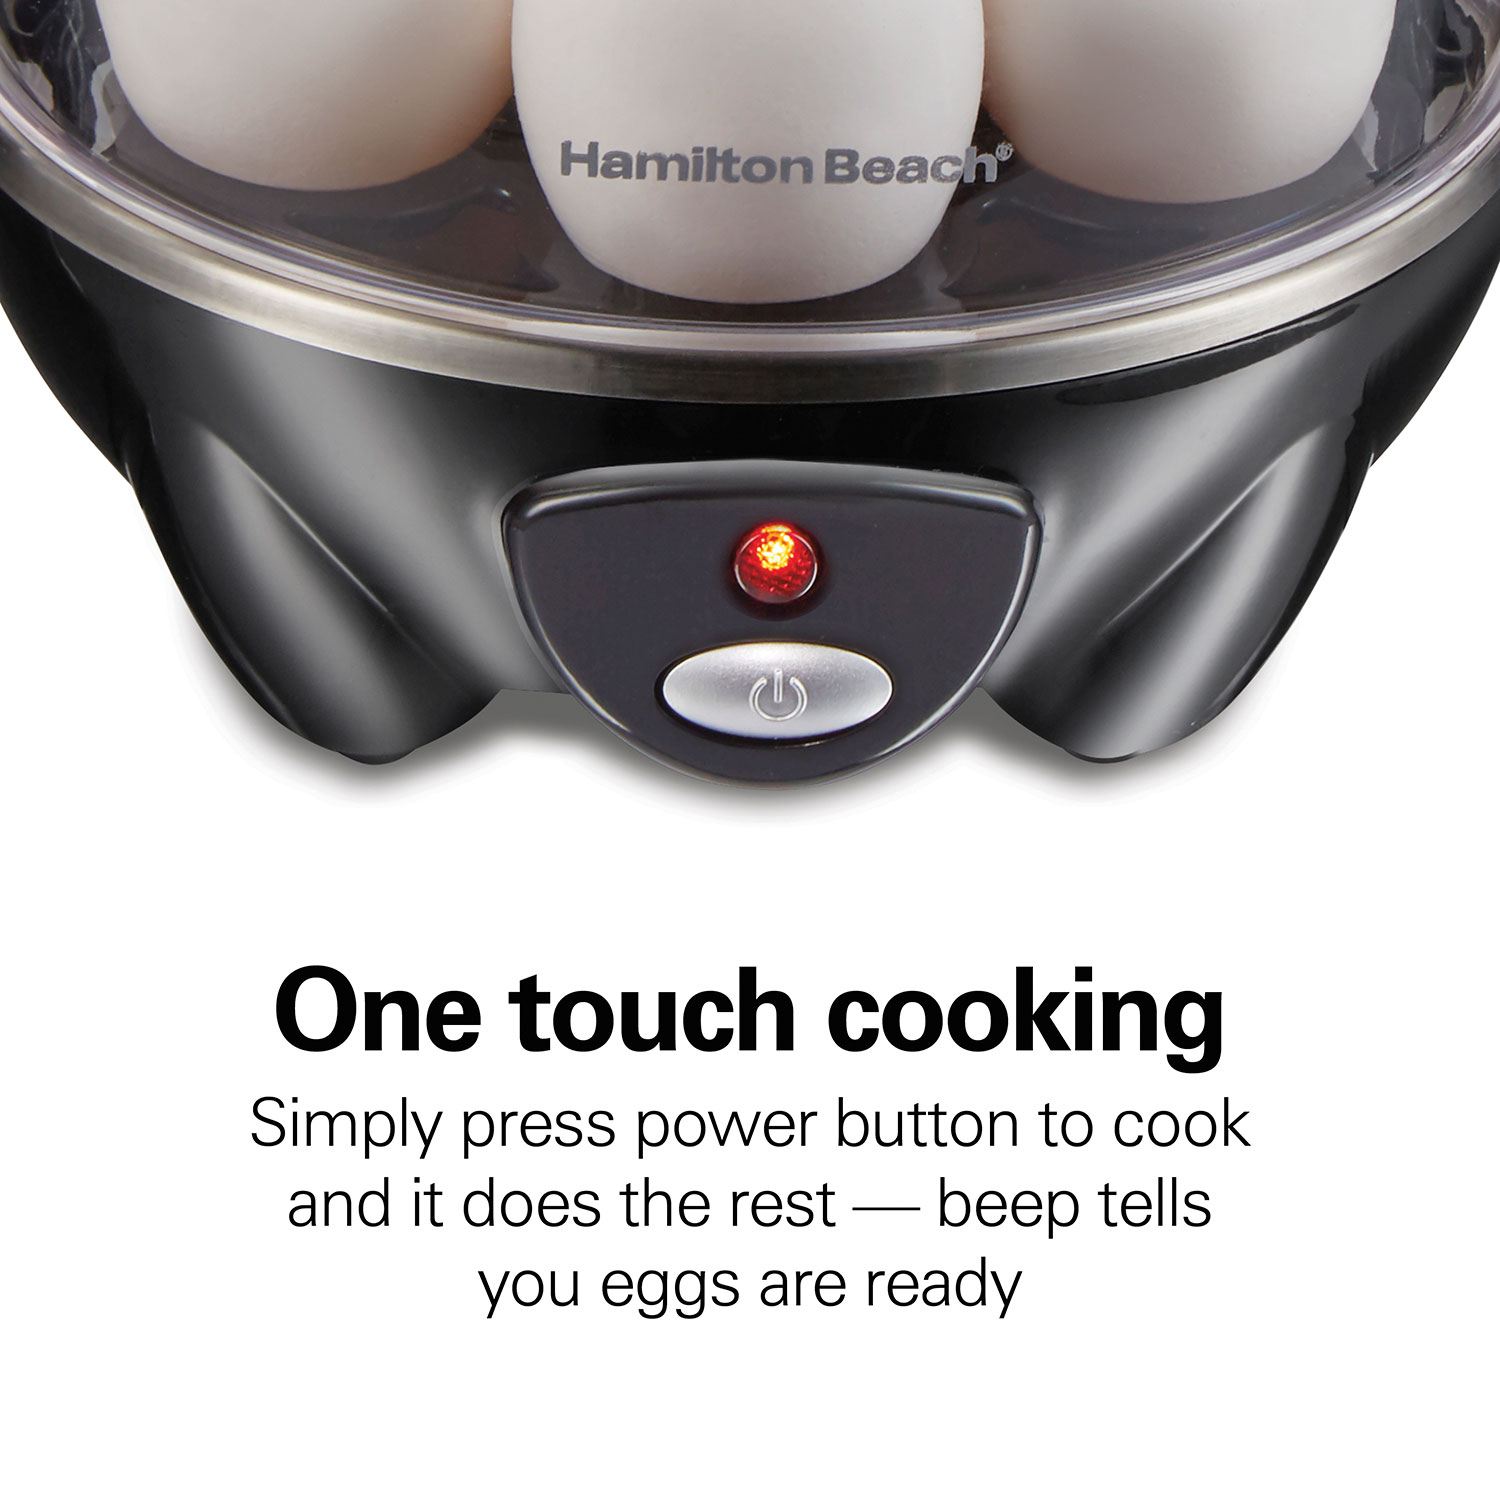 7-Egg Electric Easy Egg Cooker, Steamer, Poacher (Blue Gray)